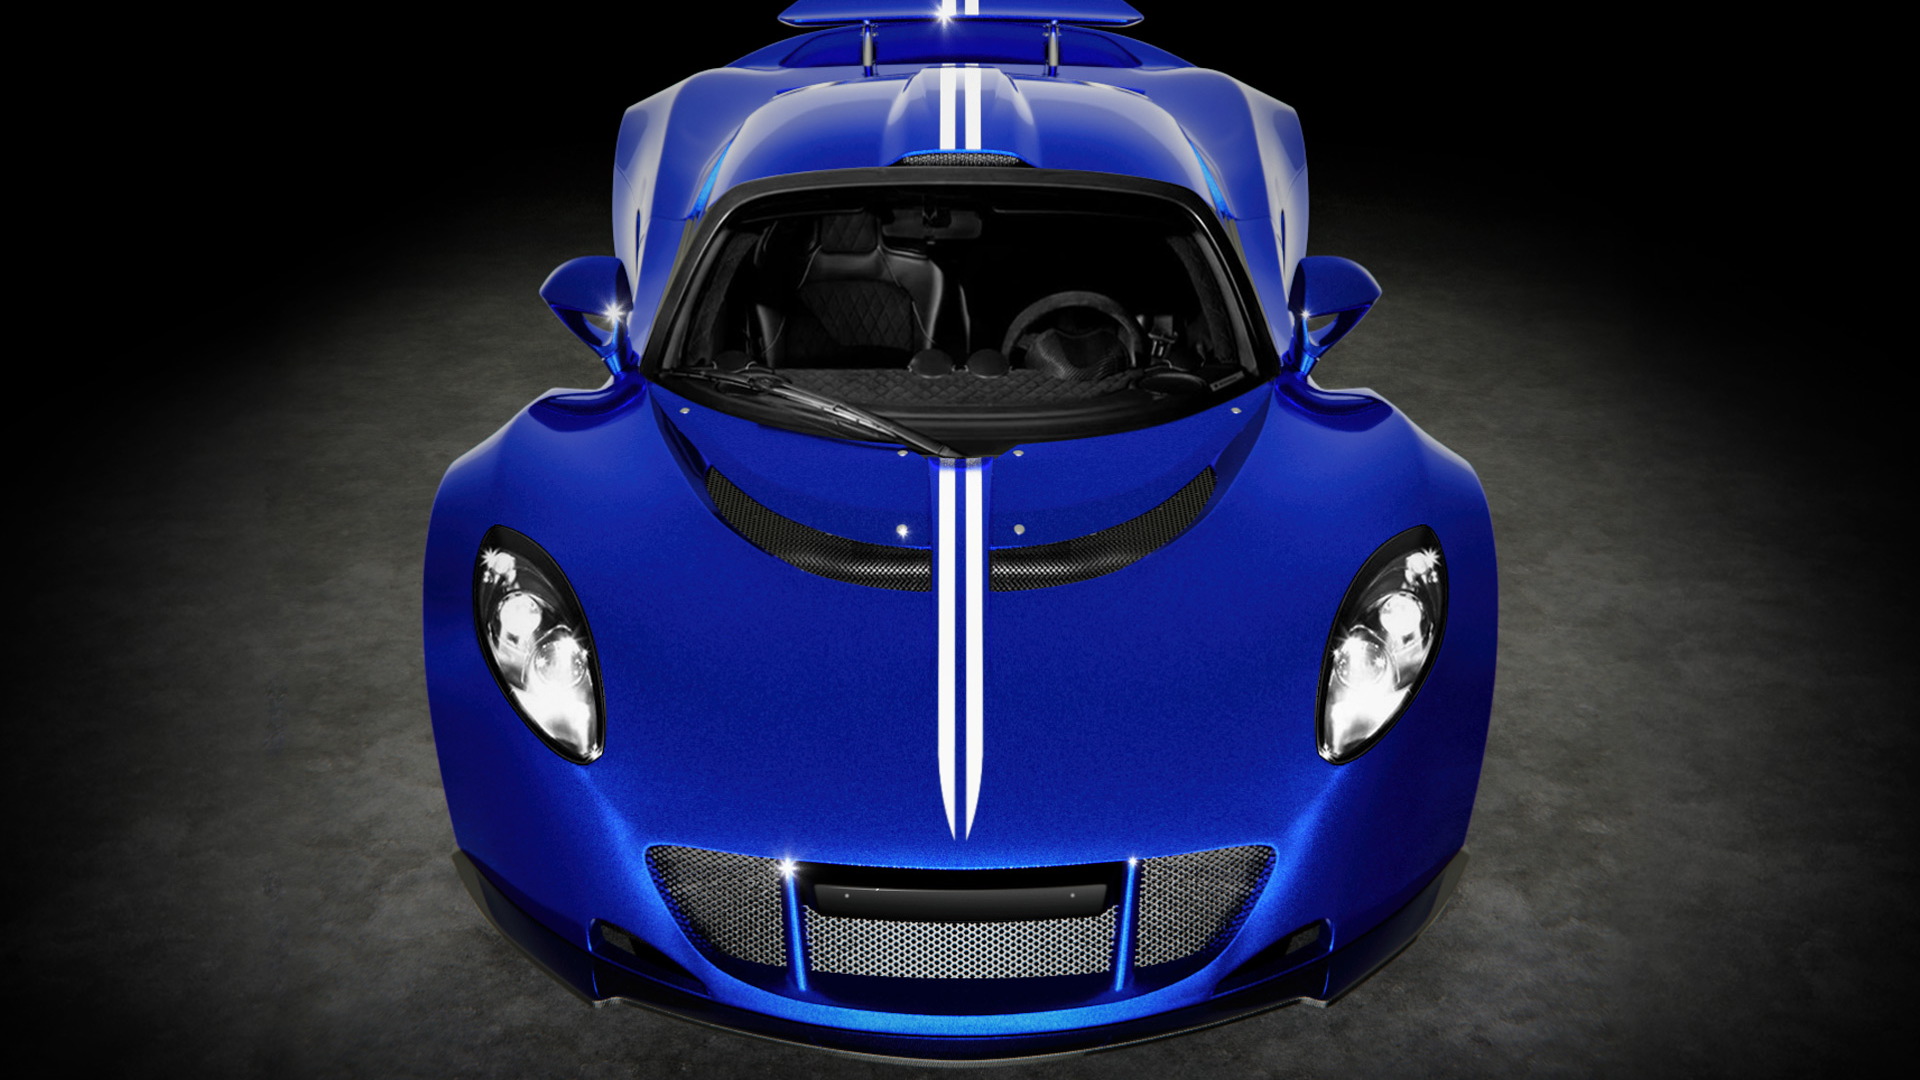 Steven Tyler's Hennessey Venom GT Spyder raises $800K for charity